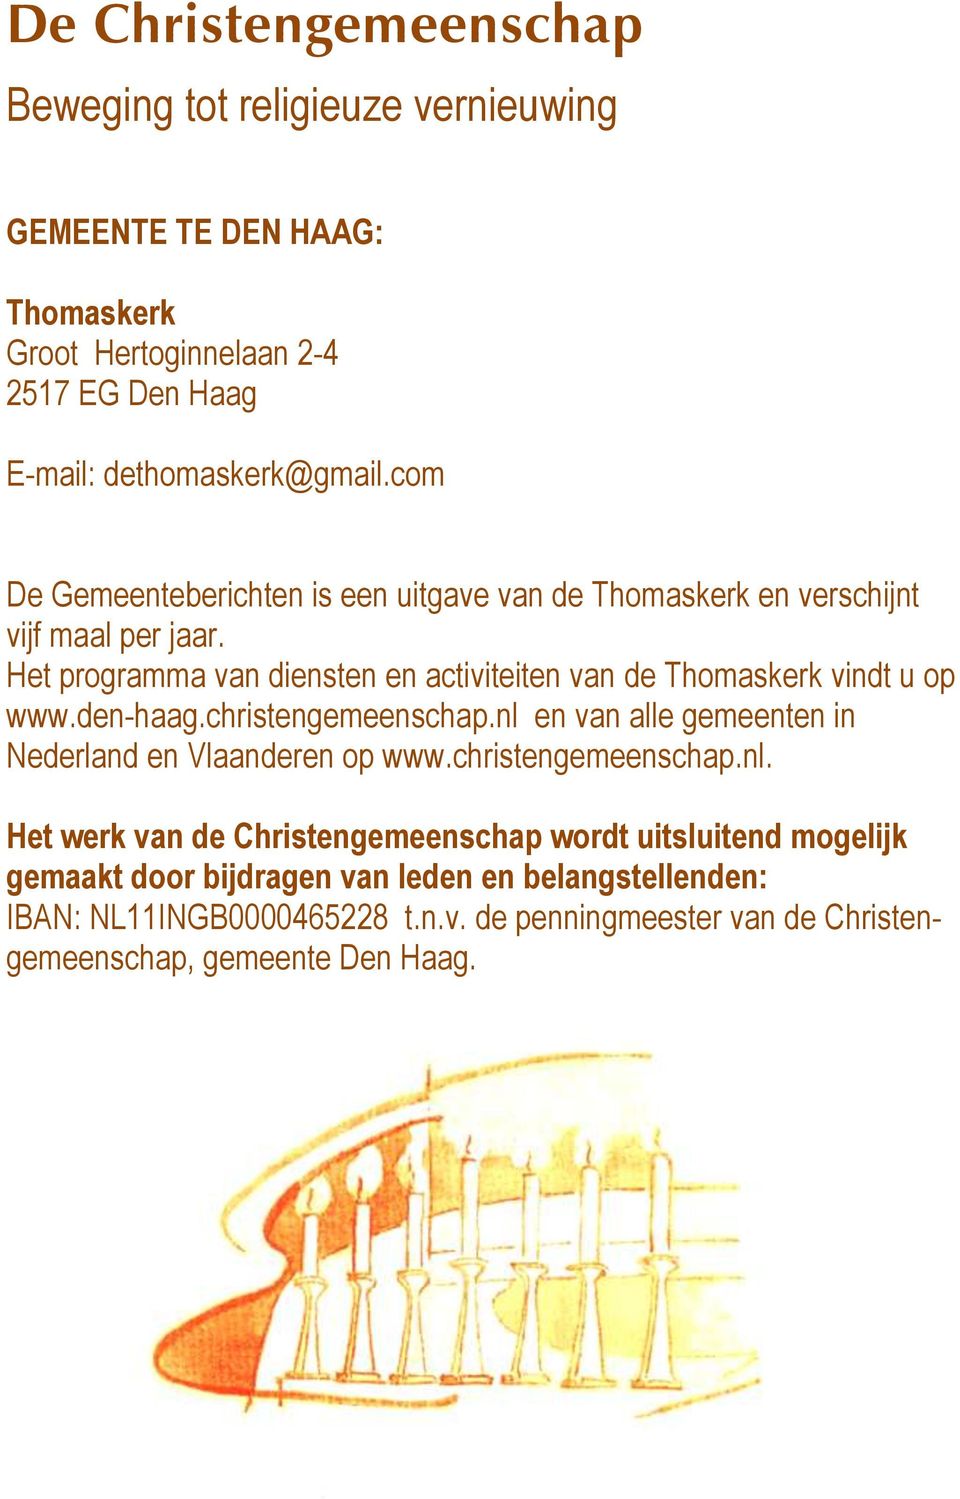 christengemeenschap.nl en van alle gemeenten in Nederland en Vlaanderen op www.christengemeenschap.nl. Het werk van de Christengemeenschap wordt uitsluitend mogelijk gemaakt door bijdragen van leden en belangstellenden: IBAN: NL11INGB0000465228 t.